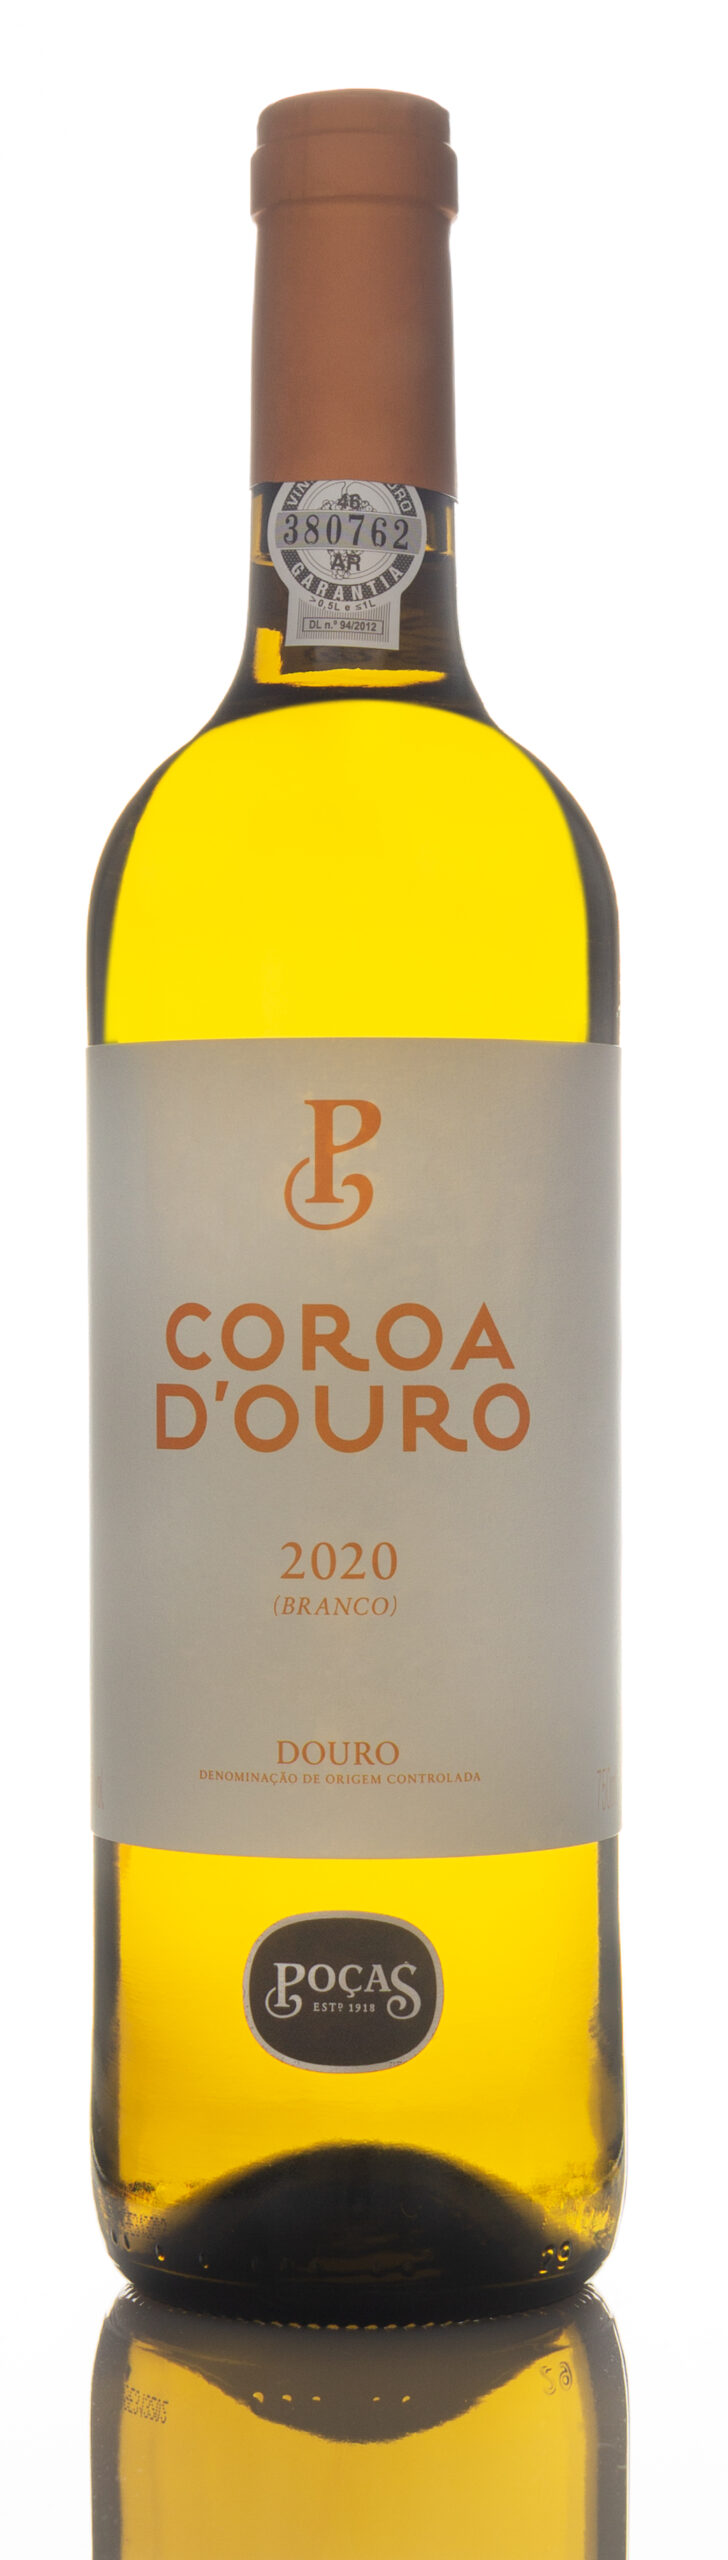 2020 Pocas Junior 'Coroa D'Ouro' Branco, Douro